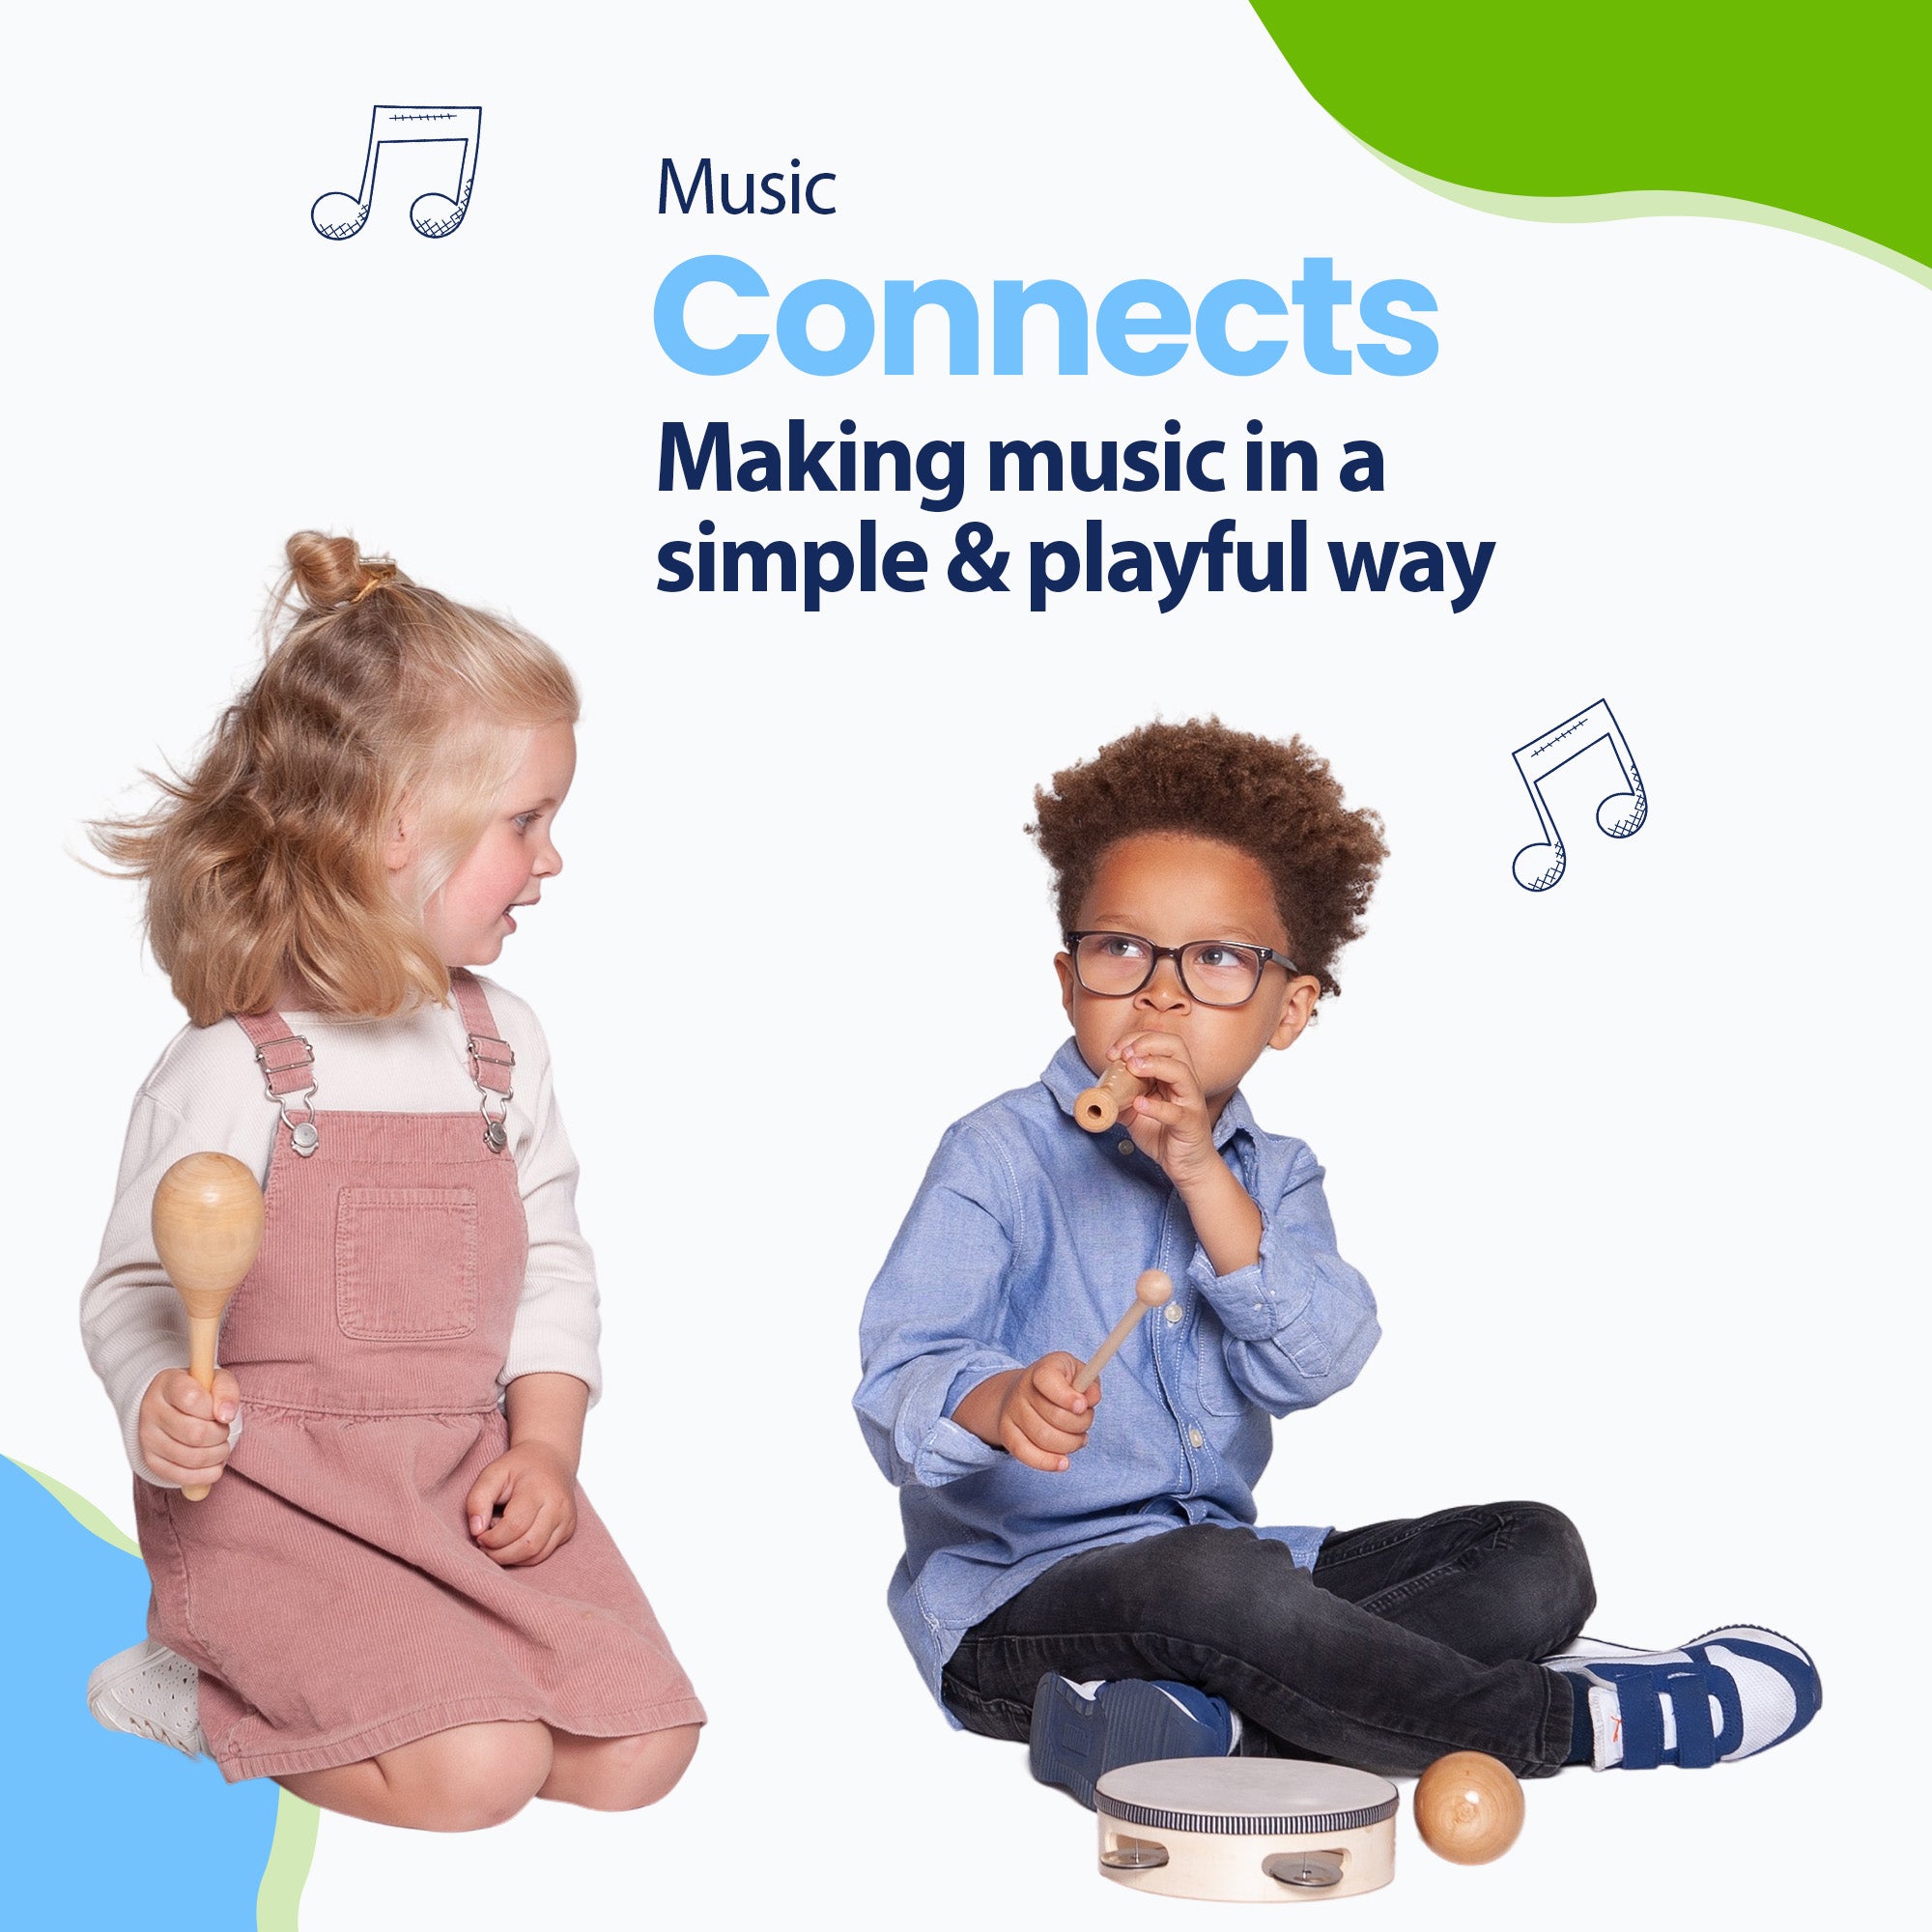 A música conecta adultos, mas também crianças. Ensine seu filho a brincar junto e desenvolver seu talento musical